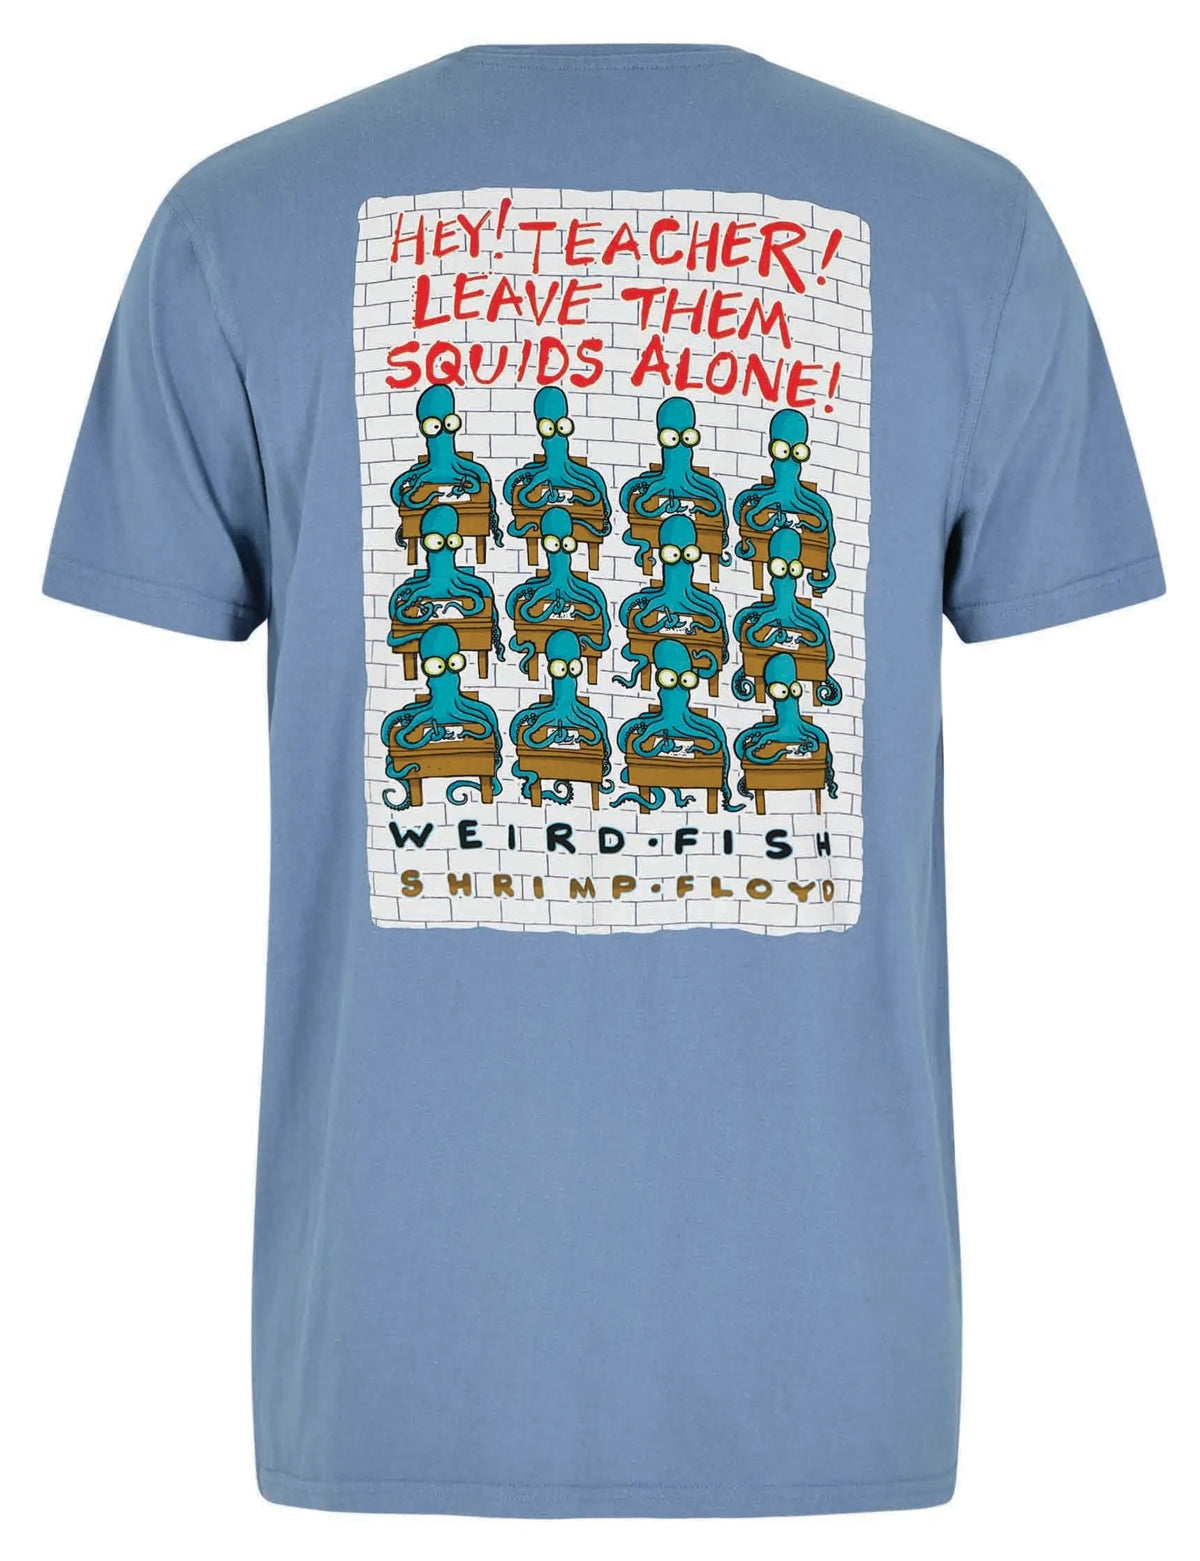 Weird Fish men's short sleeve Hey Teacher printed shrimp floyd themed tee in mid blue.